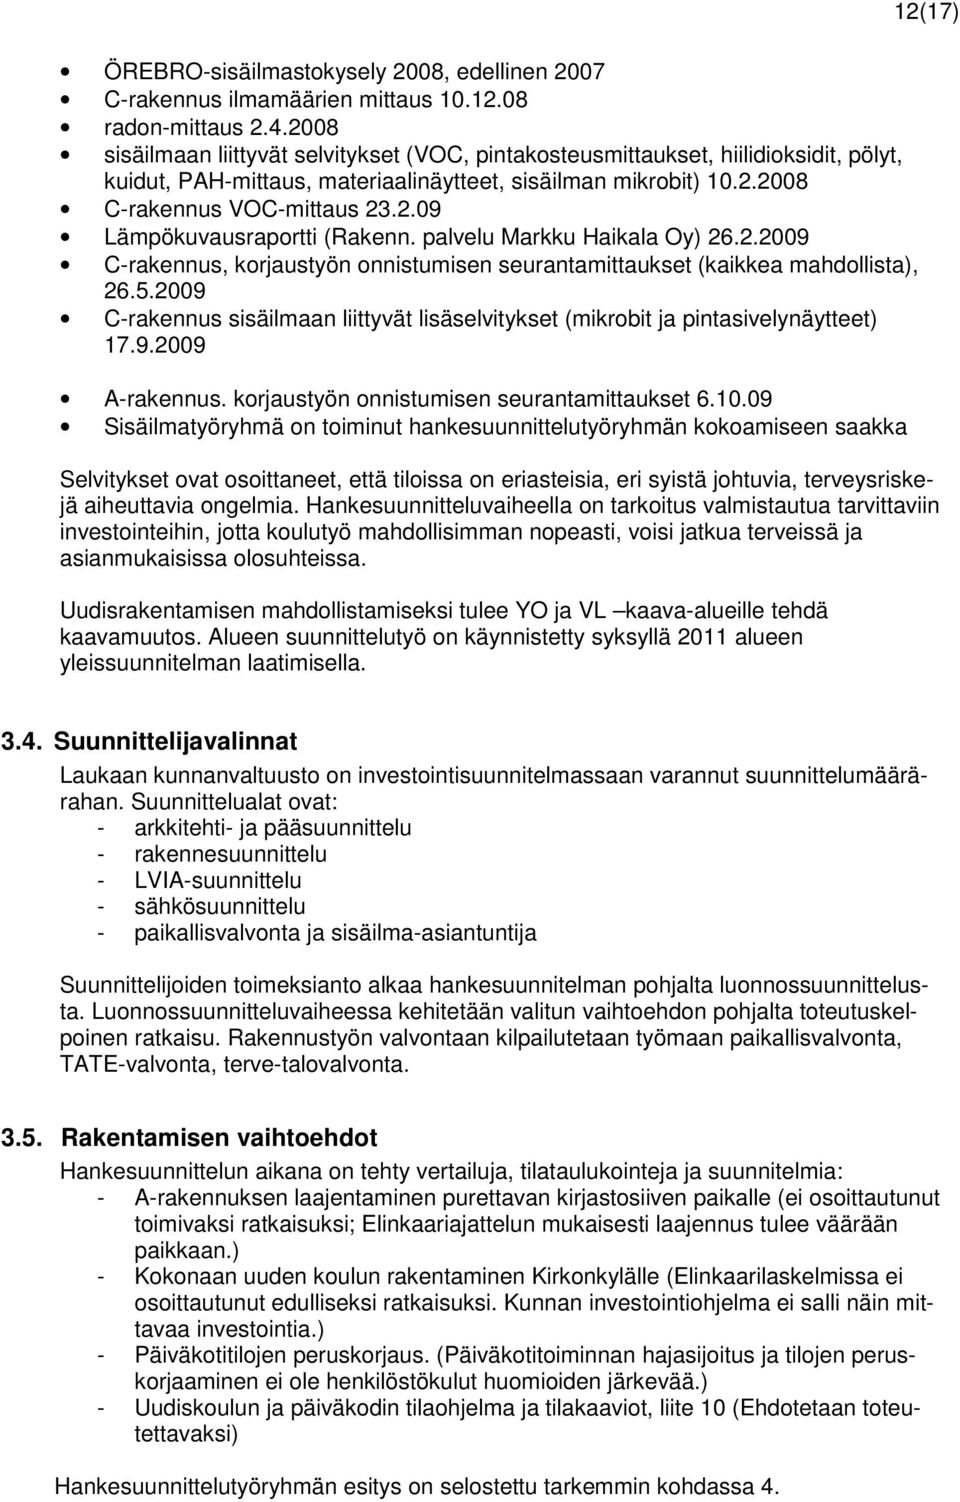 palvelu Markku Haikala Oy) 26.2.2009 C-rakennus, korjaustyön onnistumisen seurantamittaukset (kaikkea mahdollista), 26.5.